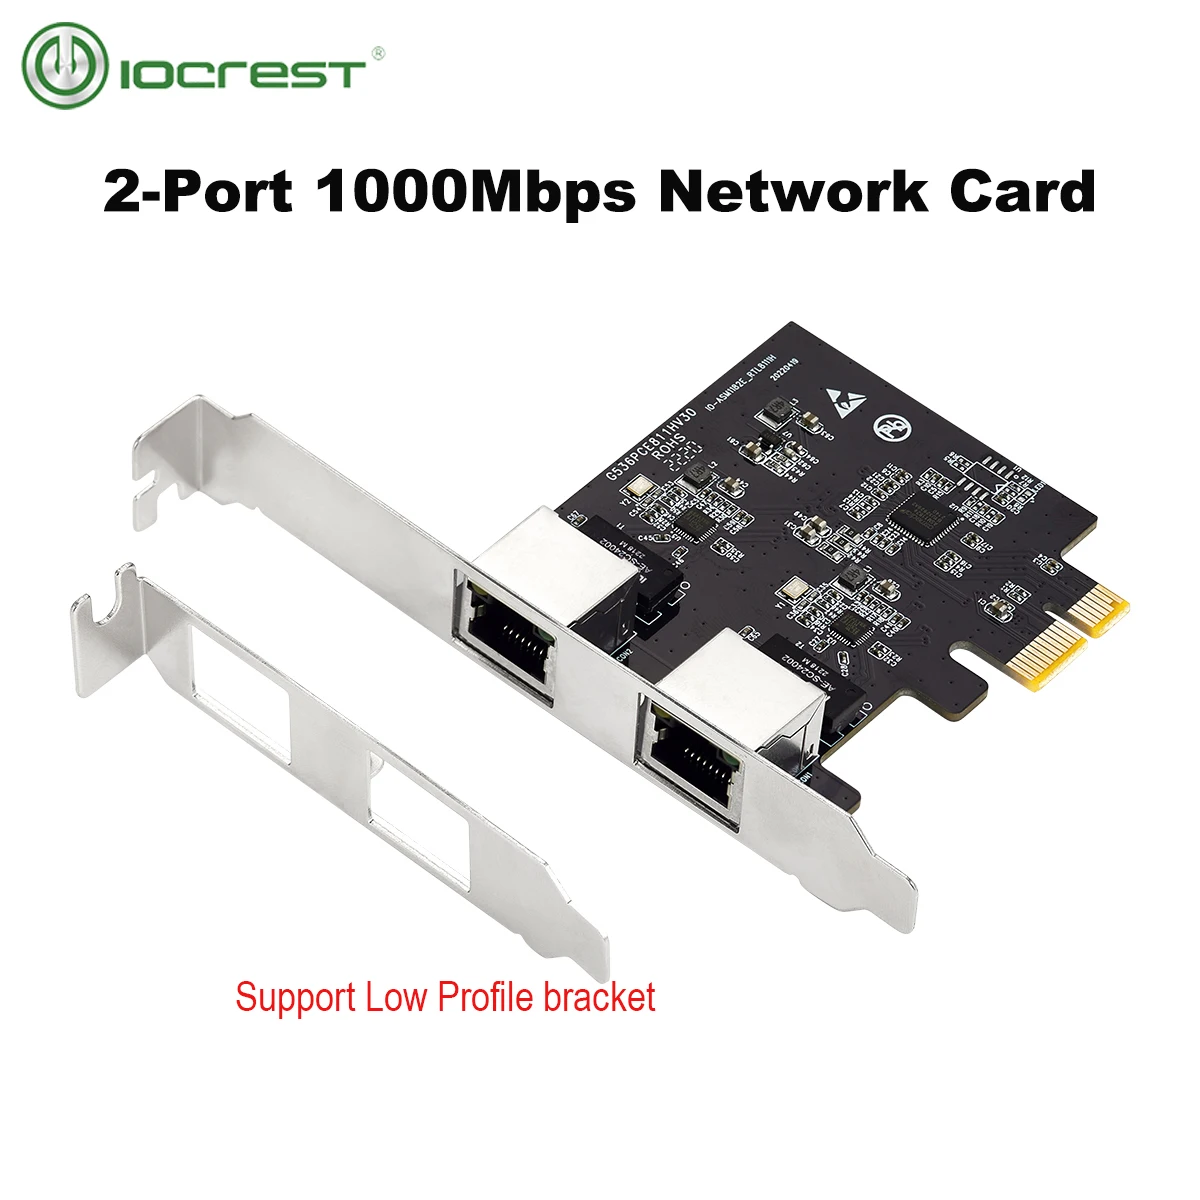 

IOCREST PCIe 2 Port 1G Gigabit Ethernet Server Network Card RTL8111h Chips rj45 Dual Port Lan Adapter NIC 10/100/1000Mbps